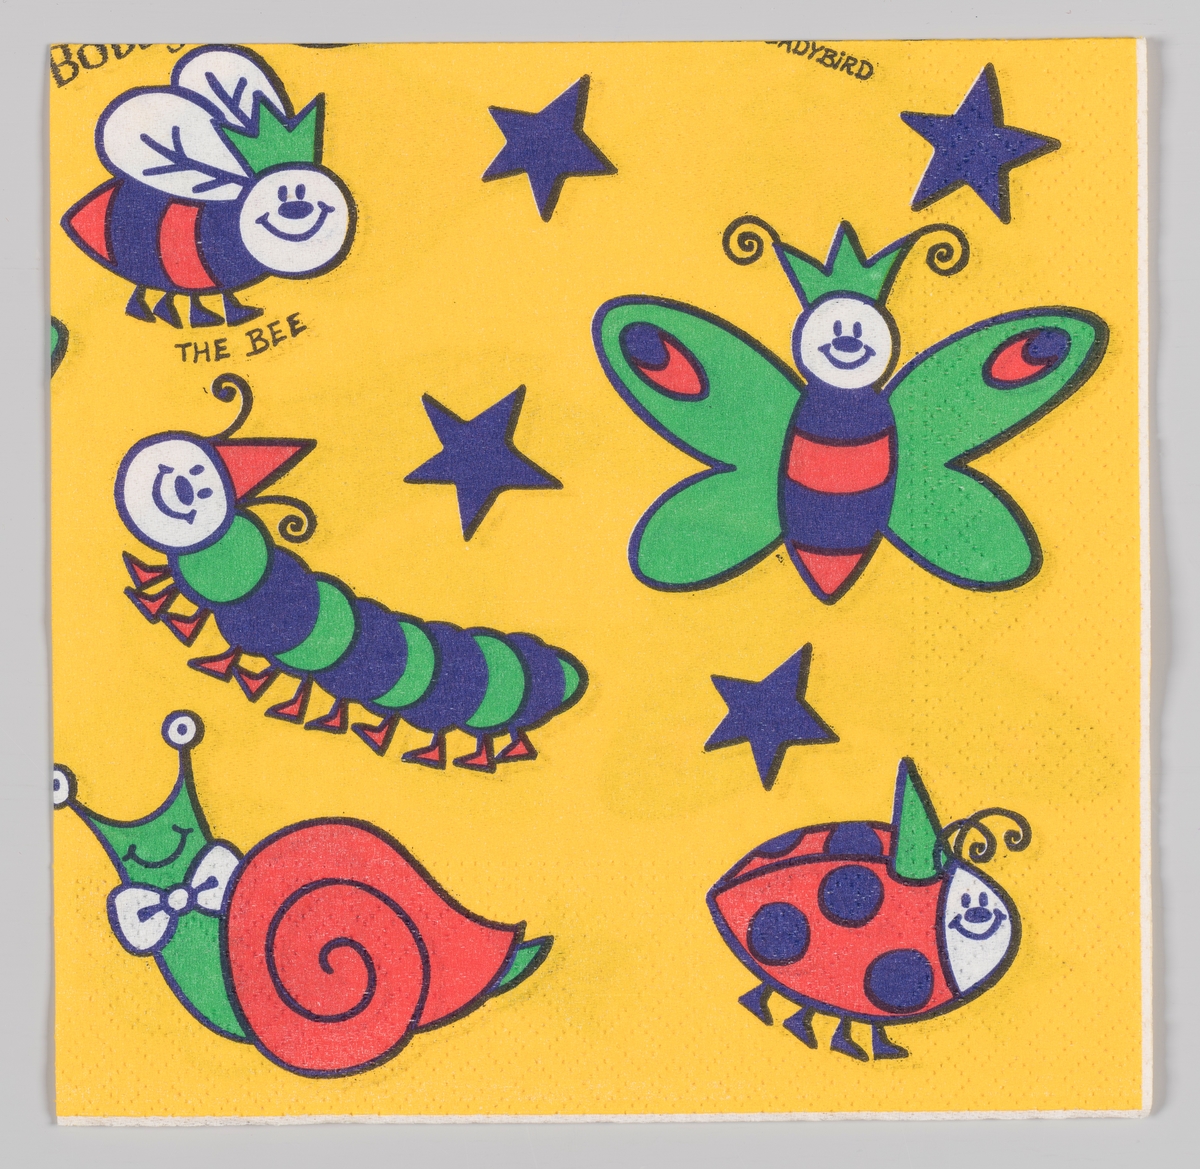 Smilende og fargerike insekter: En bie, en sommerfugl, en larve, en snegle og en marihøne mellom blå stjerner.